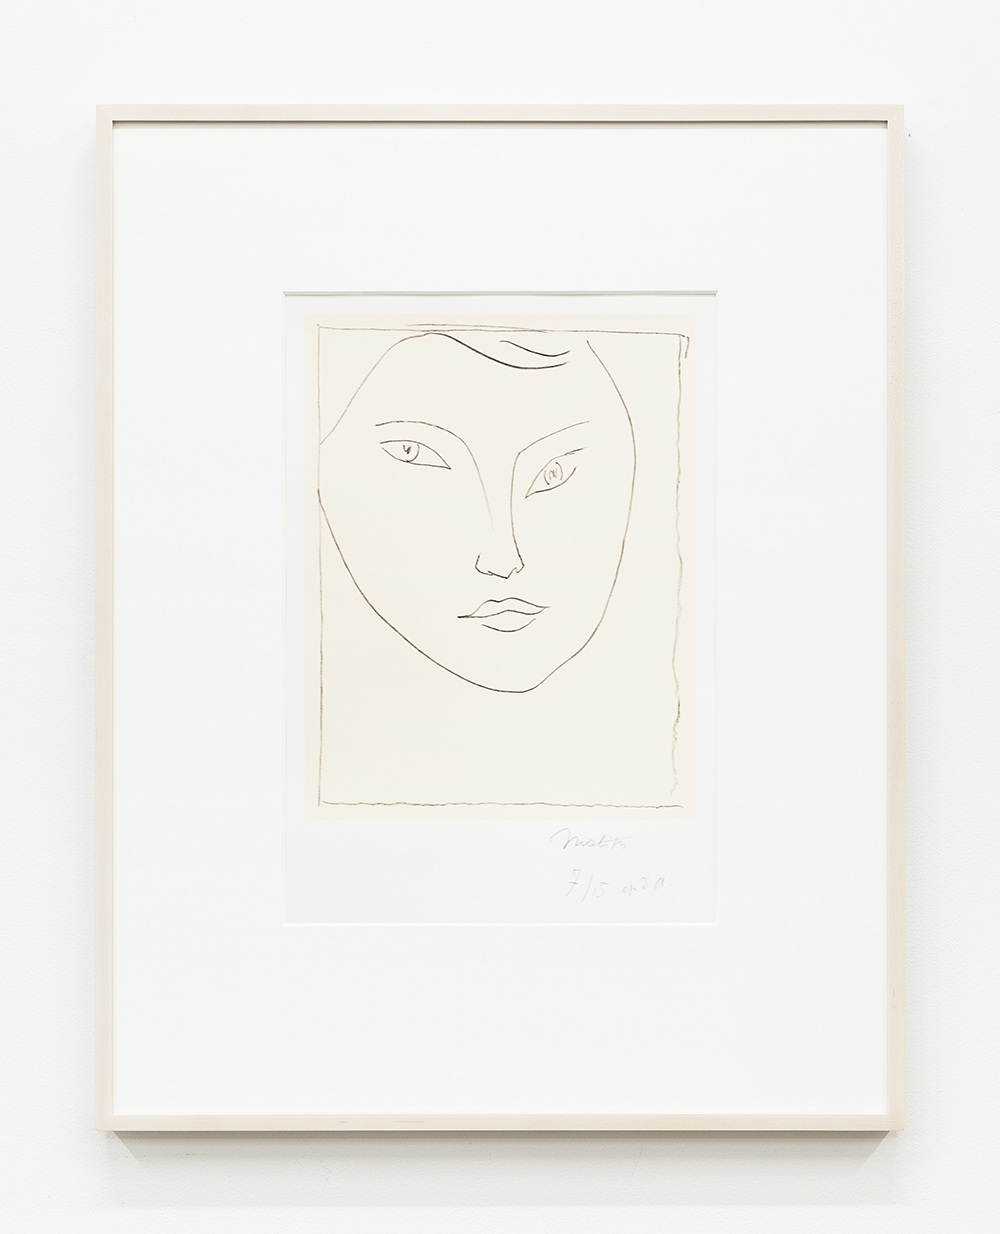 Henri Matisse Portrait de Claude D., 1946 Lithograph Image Dimensions: 14 7/8 x 11 5/8 inches (37.8 x 29.5 cm) Paper Dimensions: 26 x 19 3/4 inches (66 x 50.2 cm) Framed Dimensions: 32 1/4 x 26 inches (81.9 x 66 cm) 7, Edition of 100, plus 15 ep. d'a.